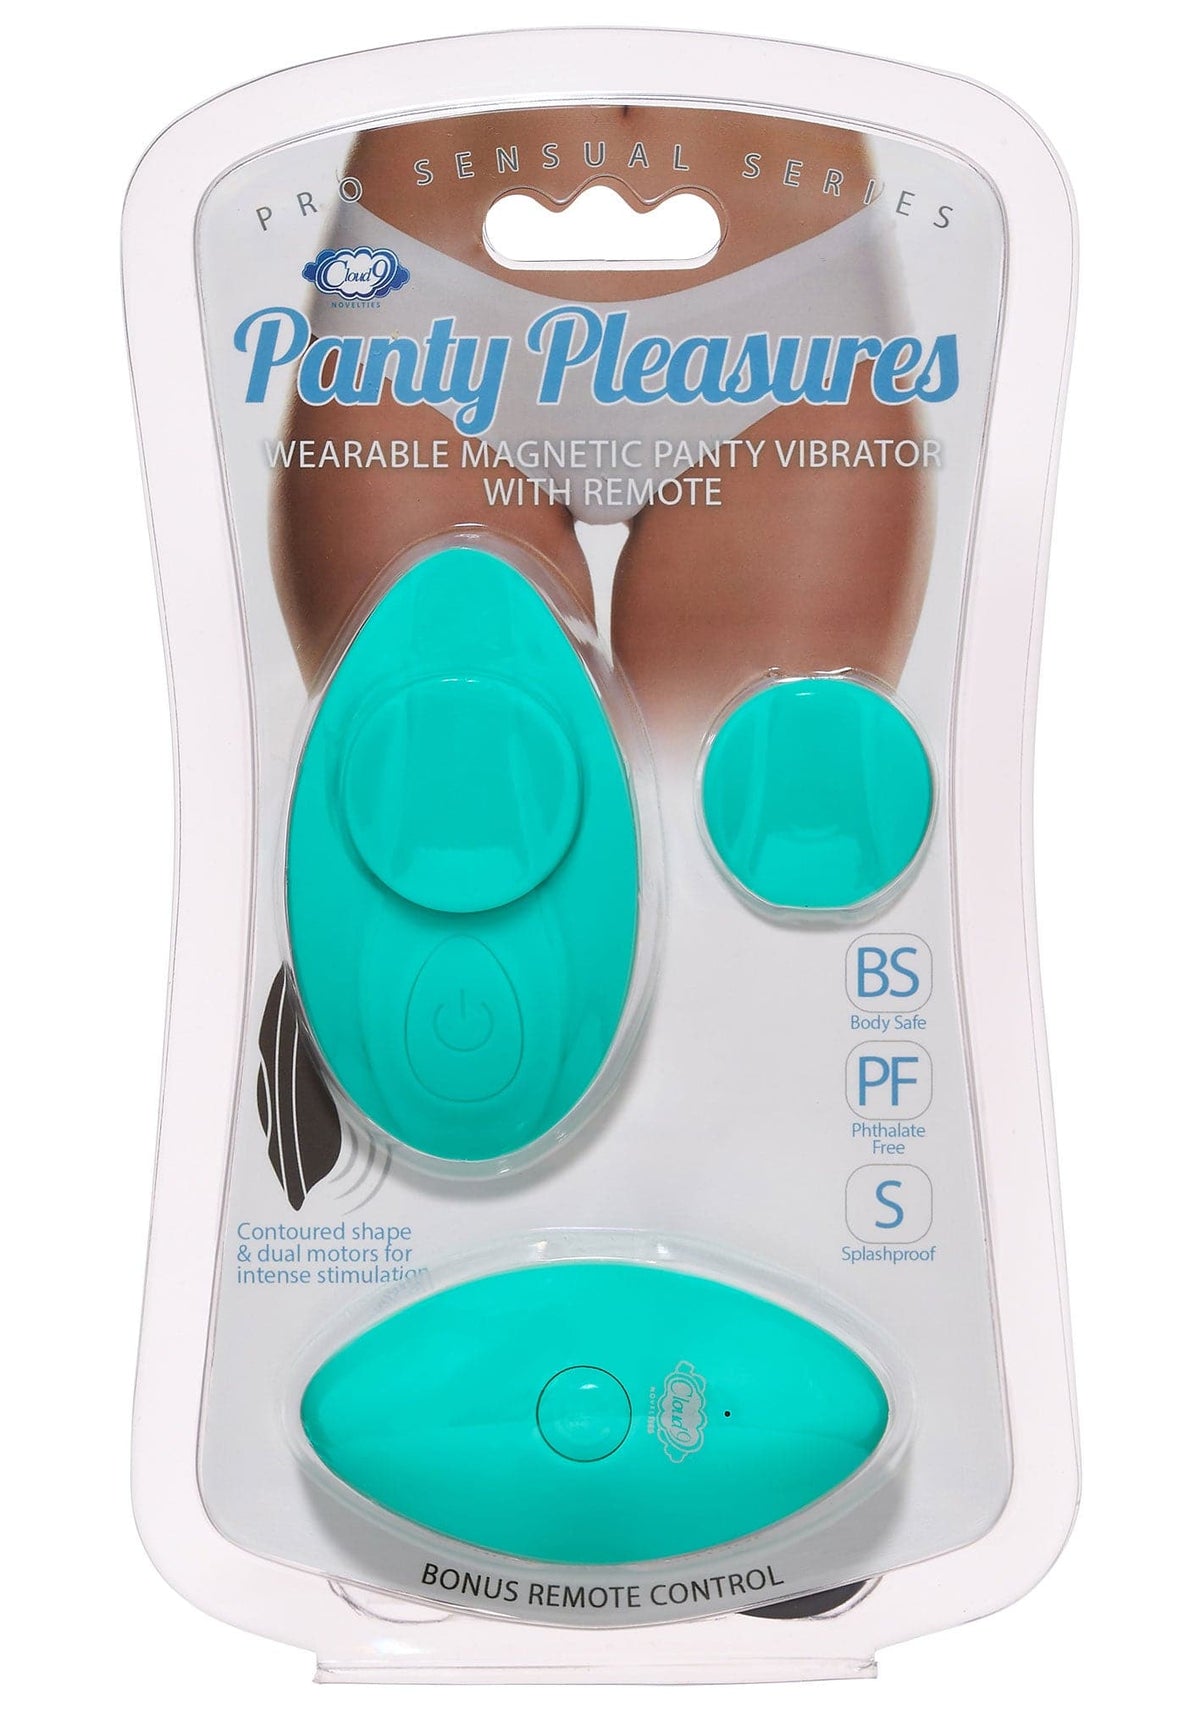 cloud 9 panty pleasures magnetic panty vibe teal